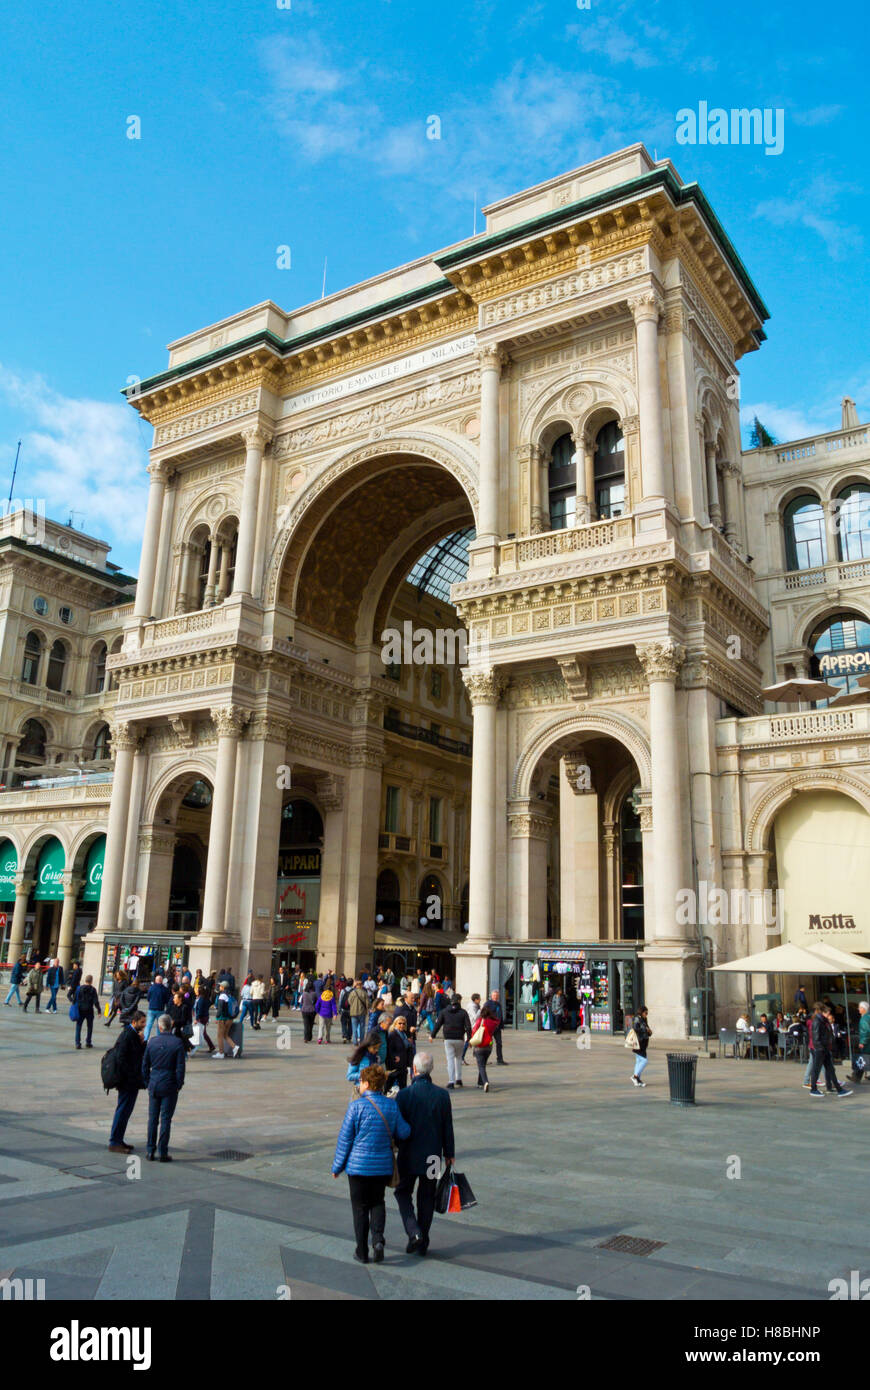 Piazza del Duomo con la facciata della Galleria Vittorio Emanuele II, Milano, Lombardia, Italia Foto Stock